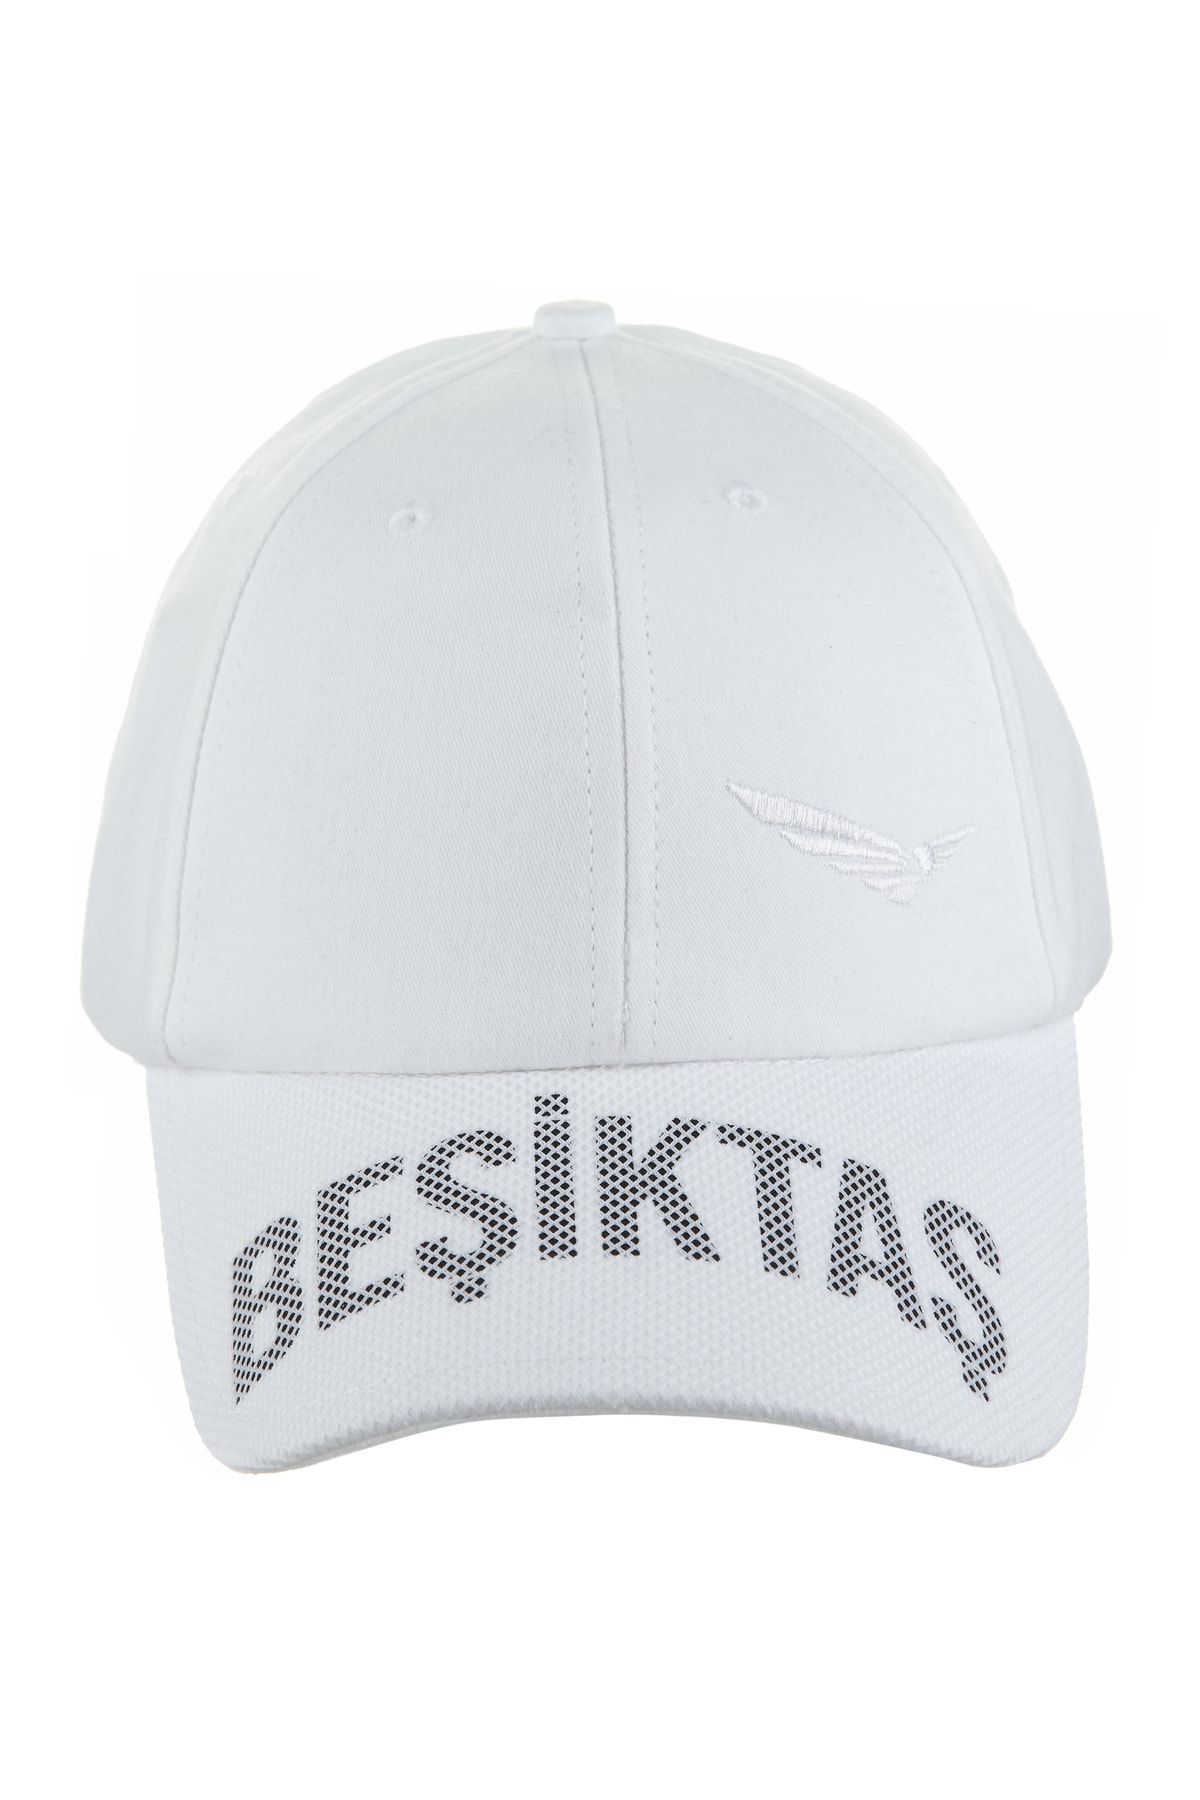 Beşiktaş Basıc Kartal Logo Şapka 02